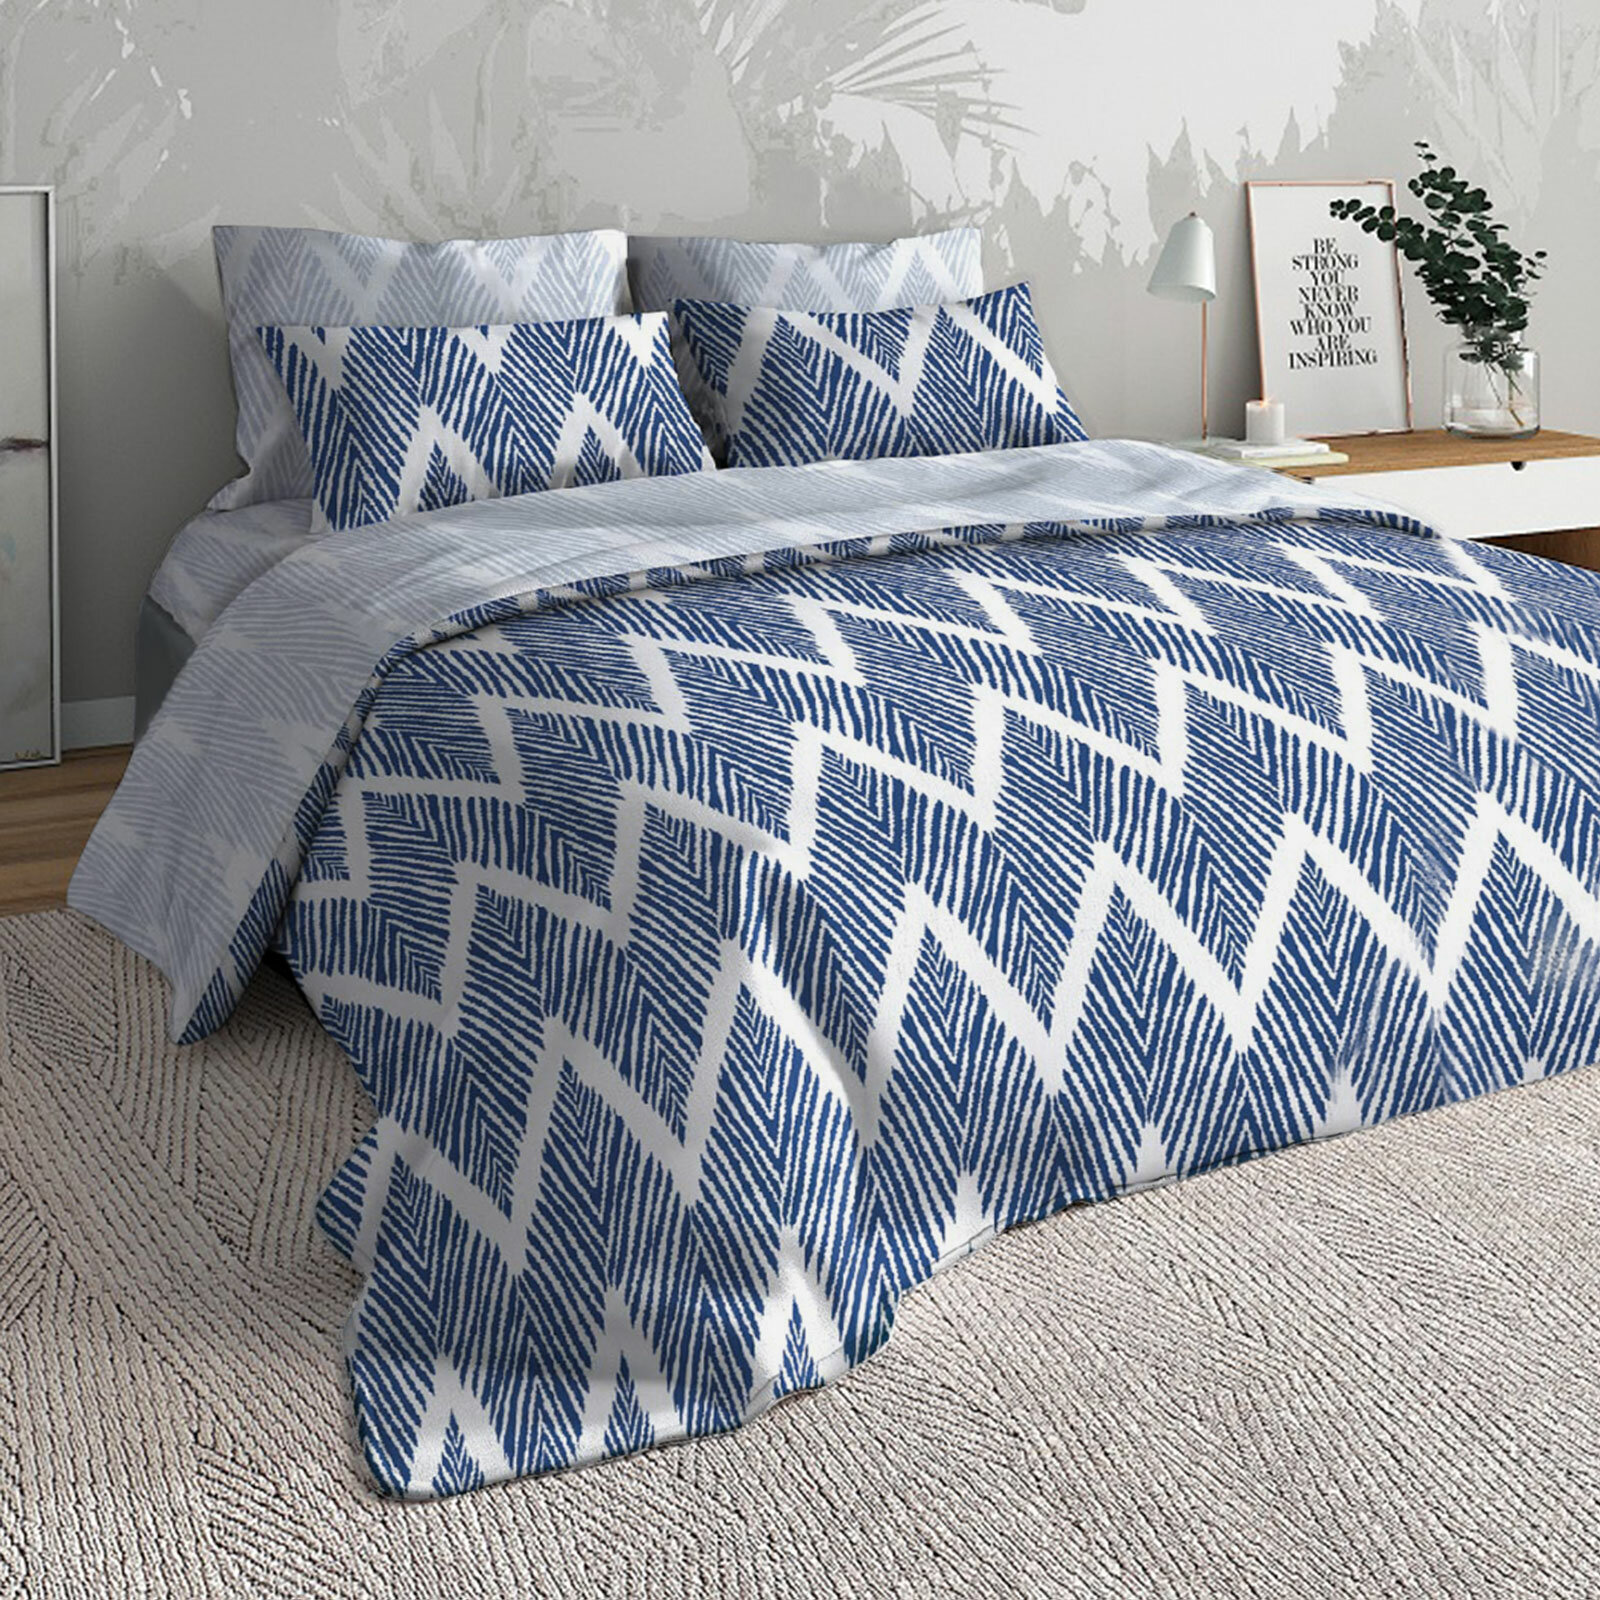 Комплект постельного белья Славянский текстиль Blum 2 спальный, простынь 180х215, наволочки 50х70 поплин, 100% хлопок